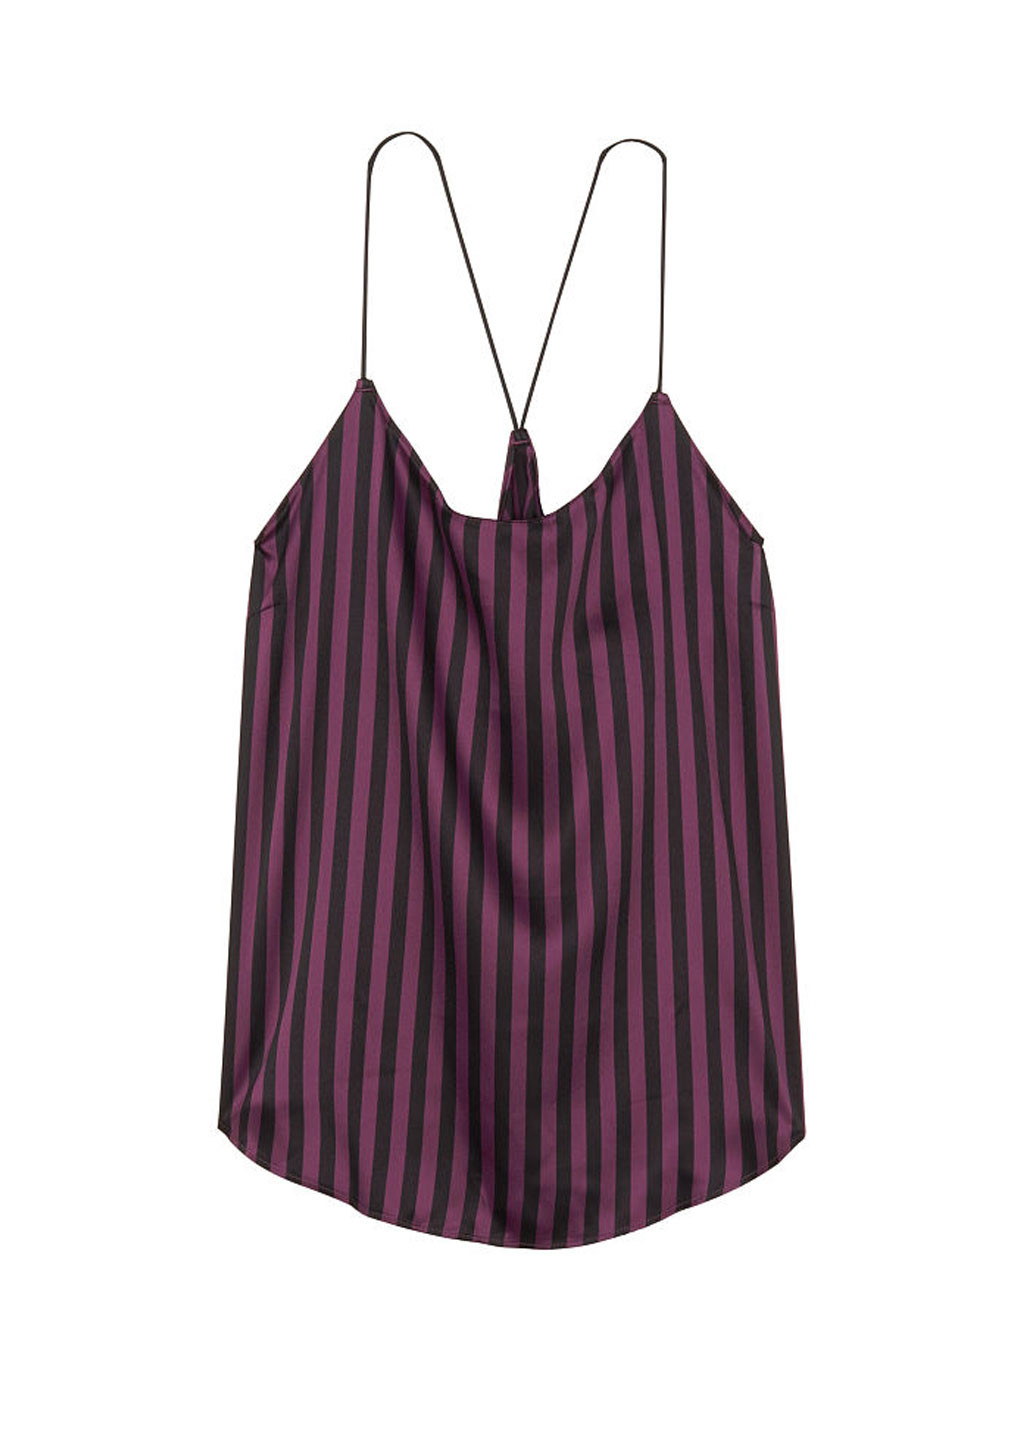 Фиолетовая всесезон пижама (топ, шорты) топ + шорты Victoria's Secret